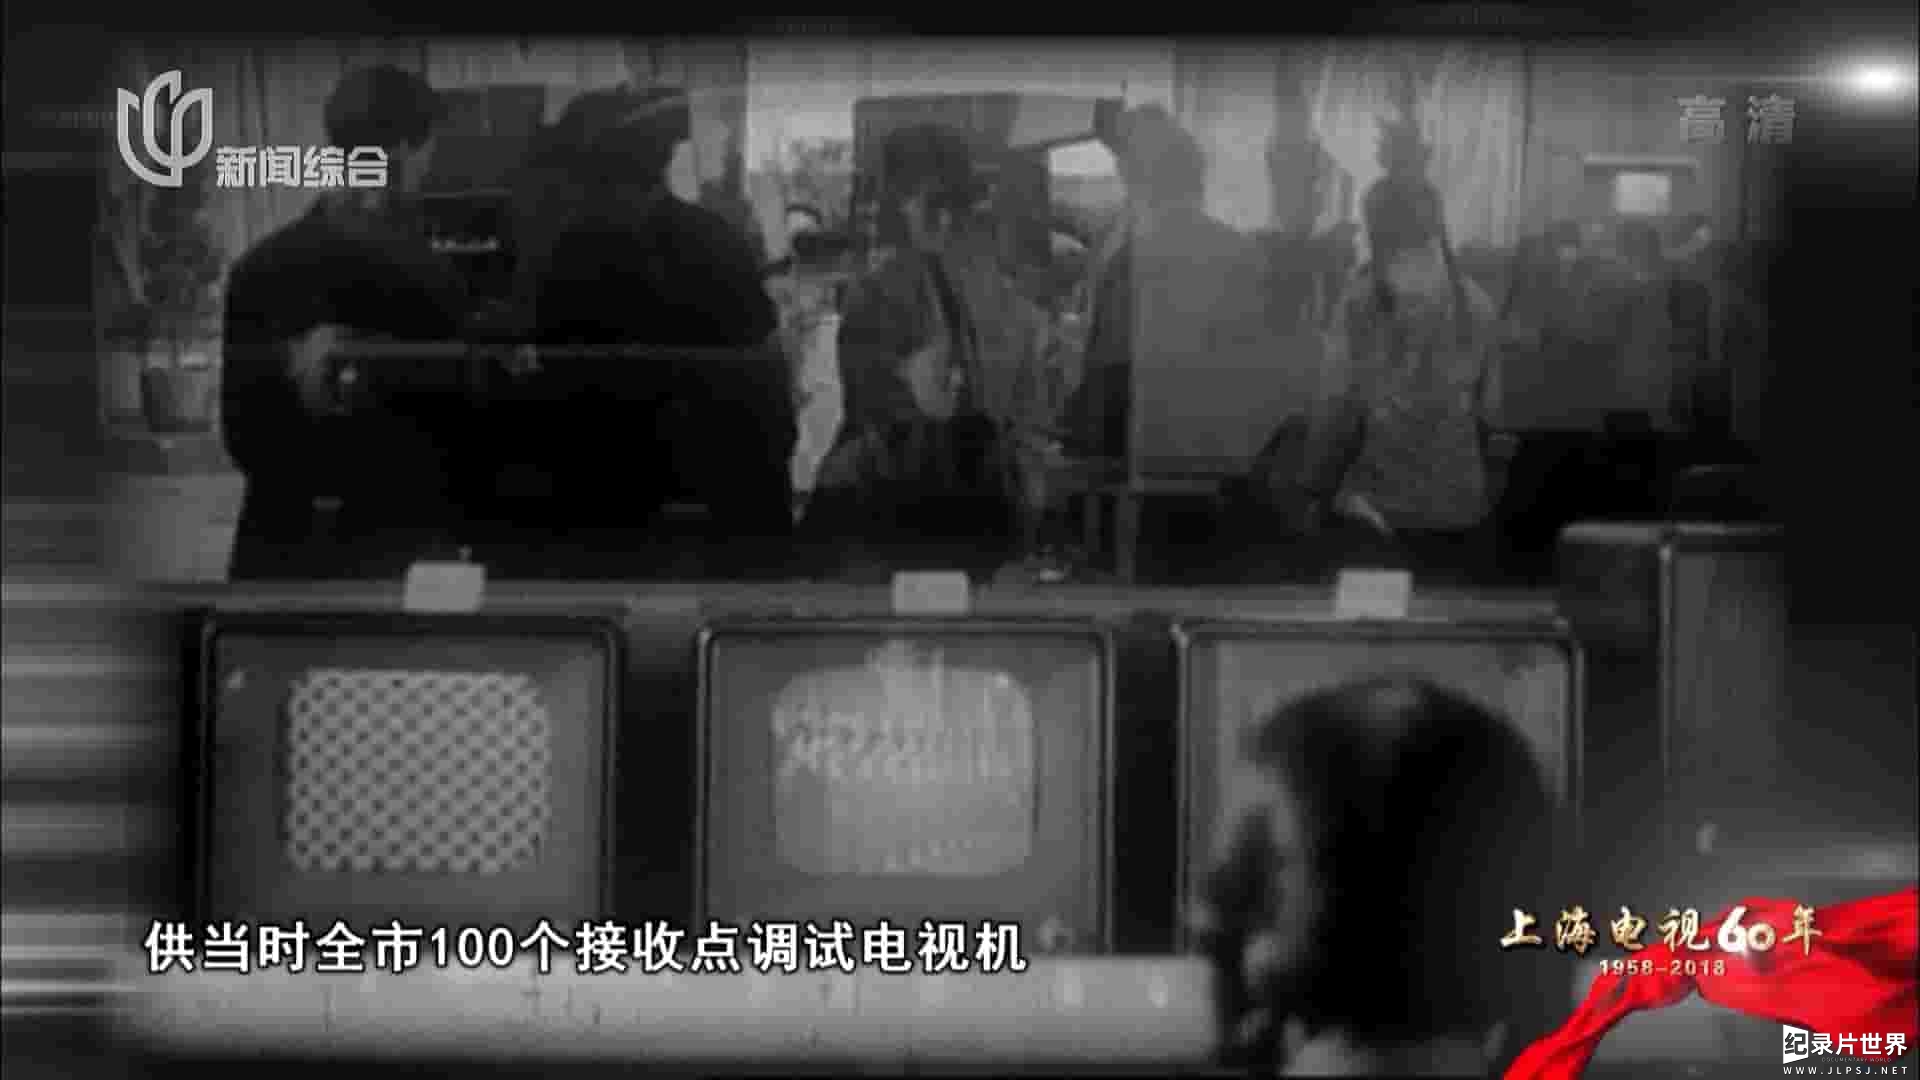 上海电视台STV《上海电视60年 2018》全4集